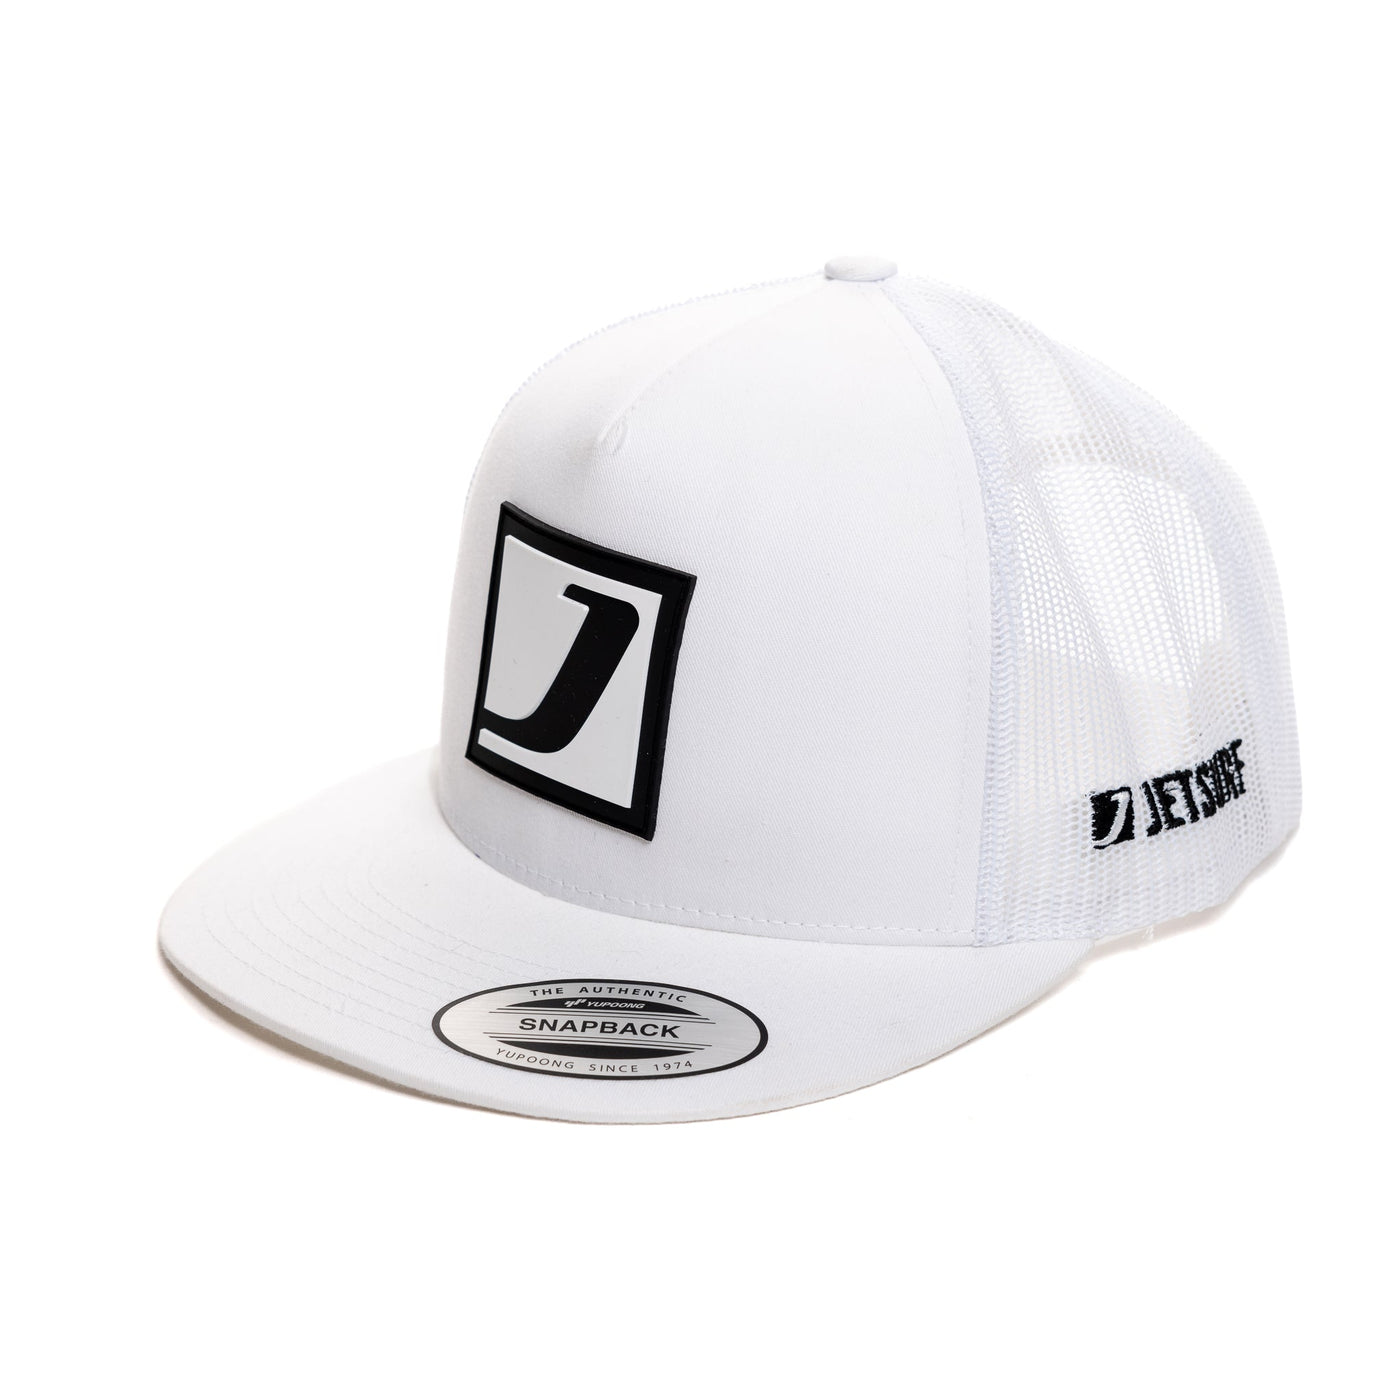 Nowoczesna czapka z daszkiem Trucker Jetsurf biała.  Biało-czarne logo  Jetsurf na froncie.